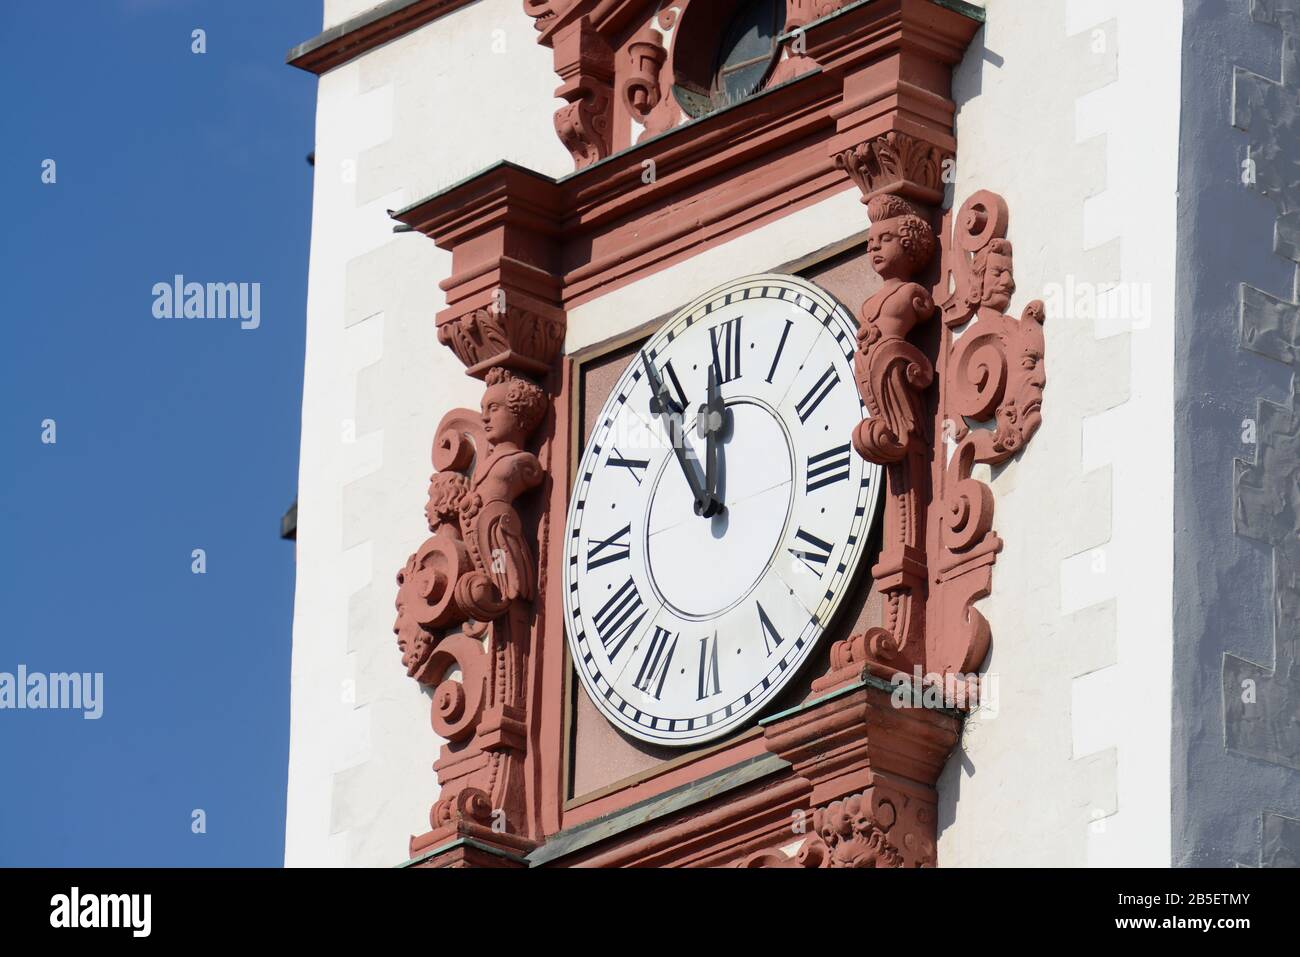 Uhr, Altes Rathaus, Markt, Chemnitz, Sachsen, Deutschland Stock Photo